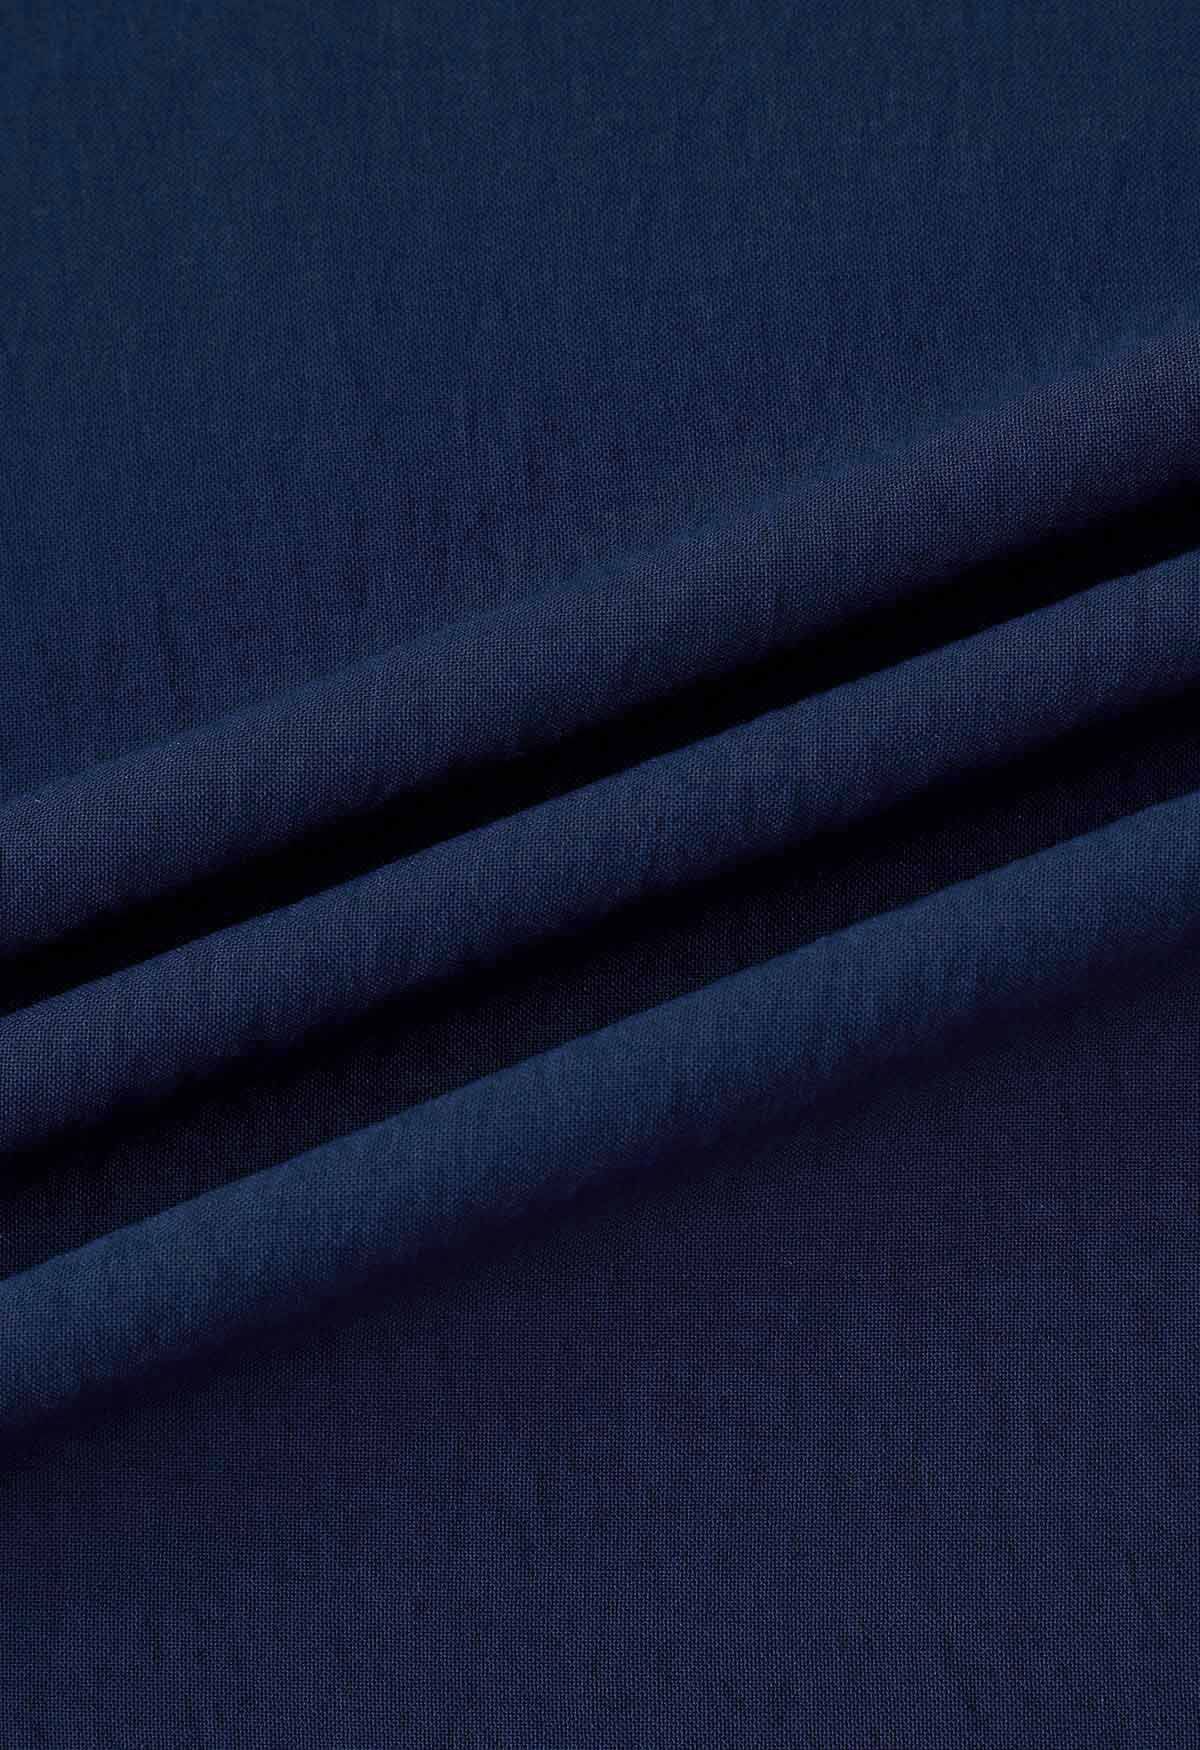 Cami-Kleid mit Rüschensaum und Schnürung an den Schultern in Marineblau